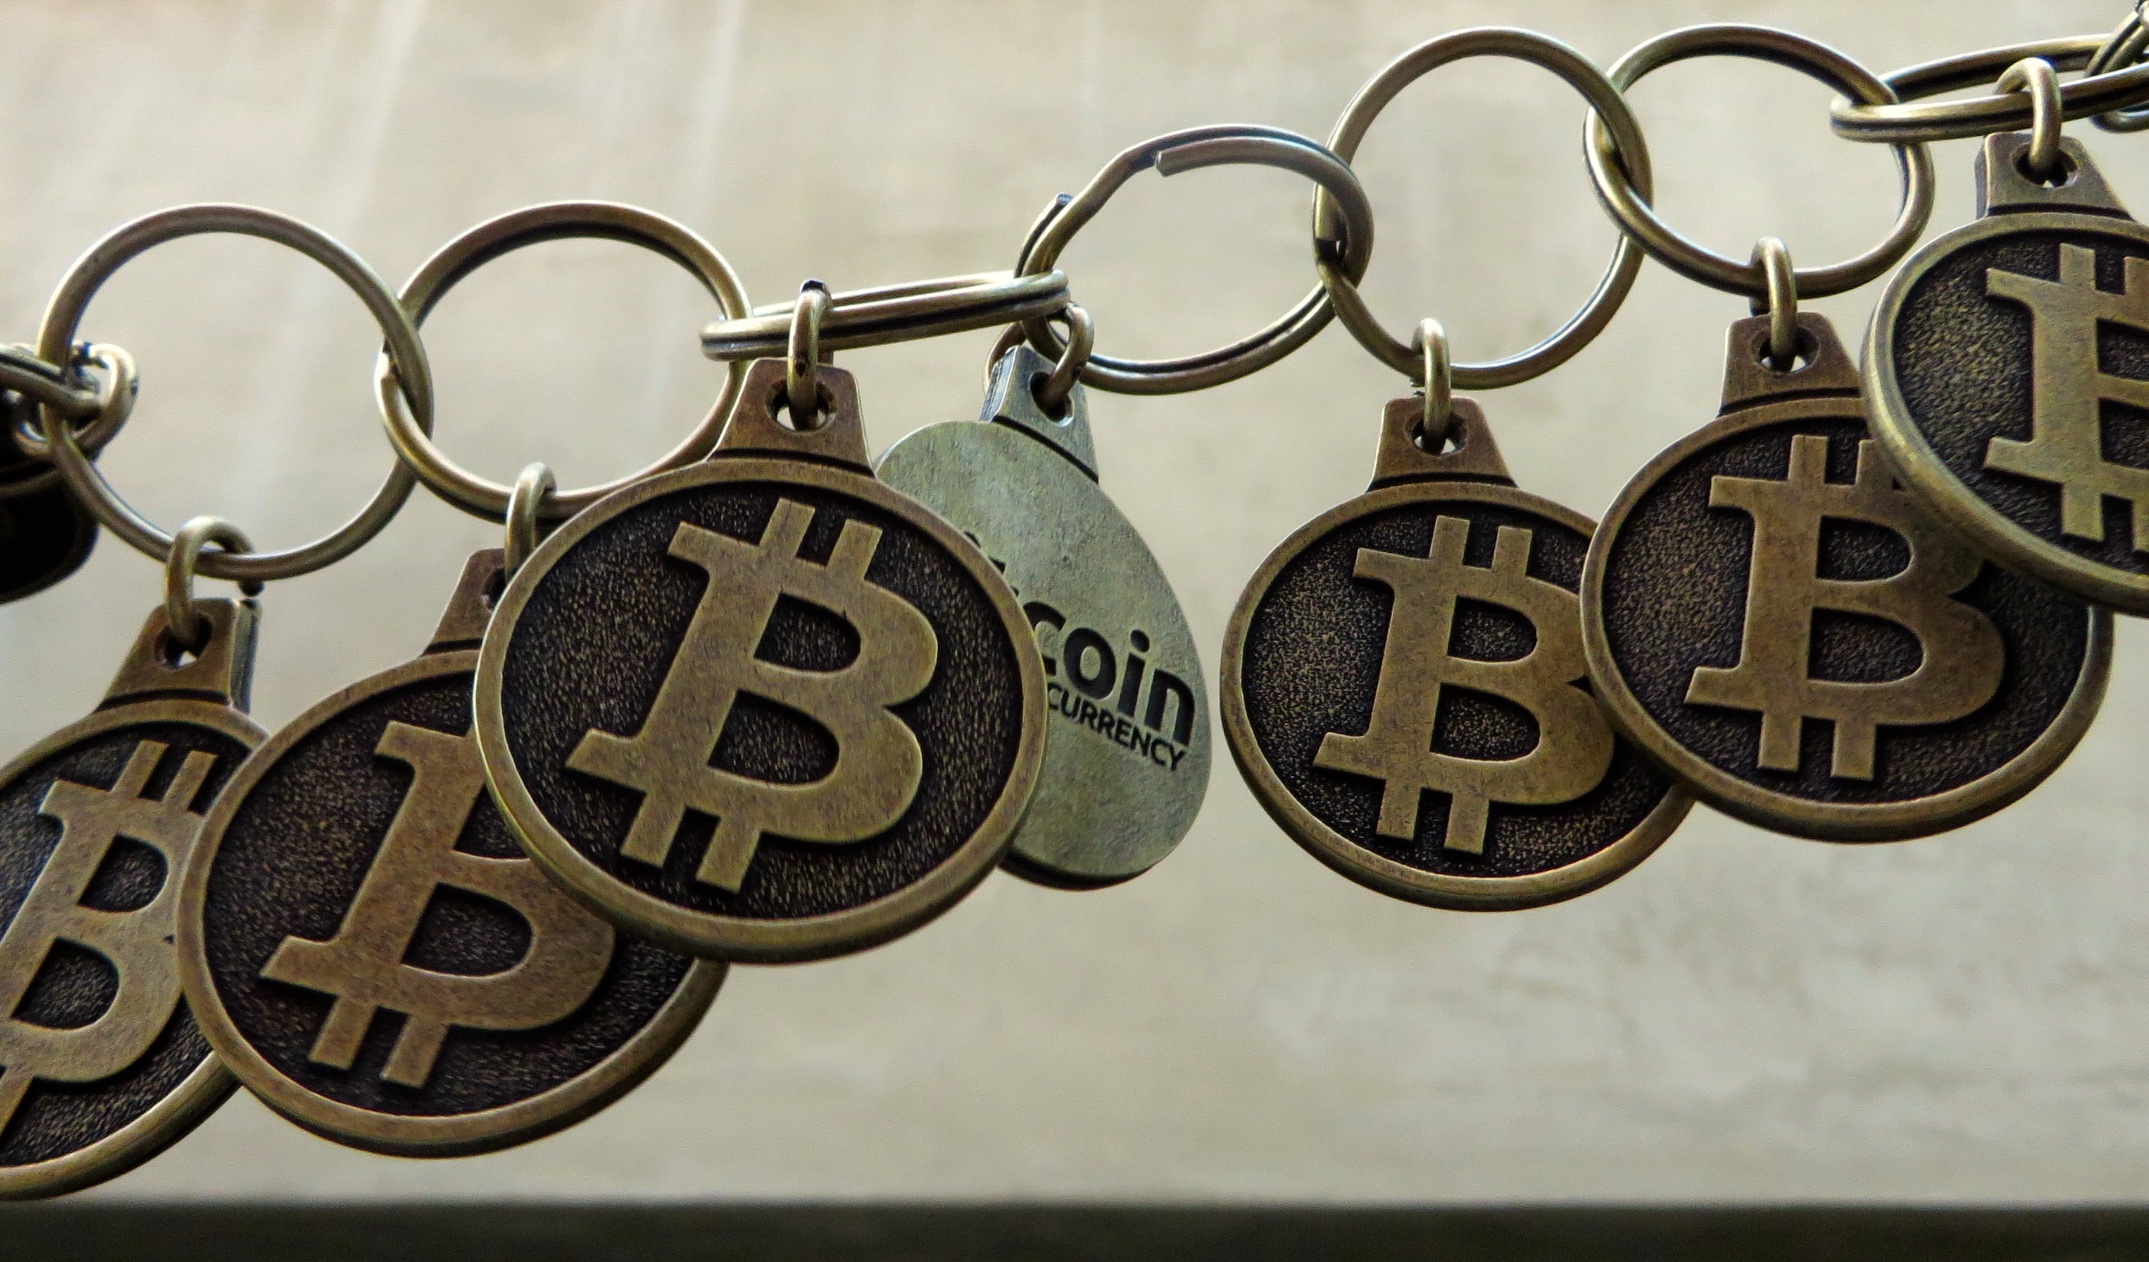 Foto: Kette aus Bitcoin-Münzen (symbolisierte Blockchain)